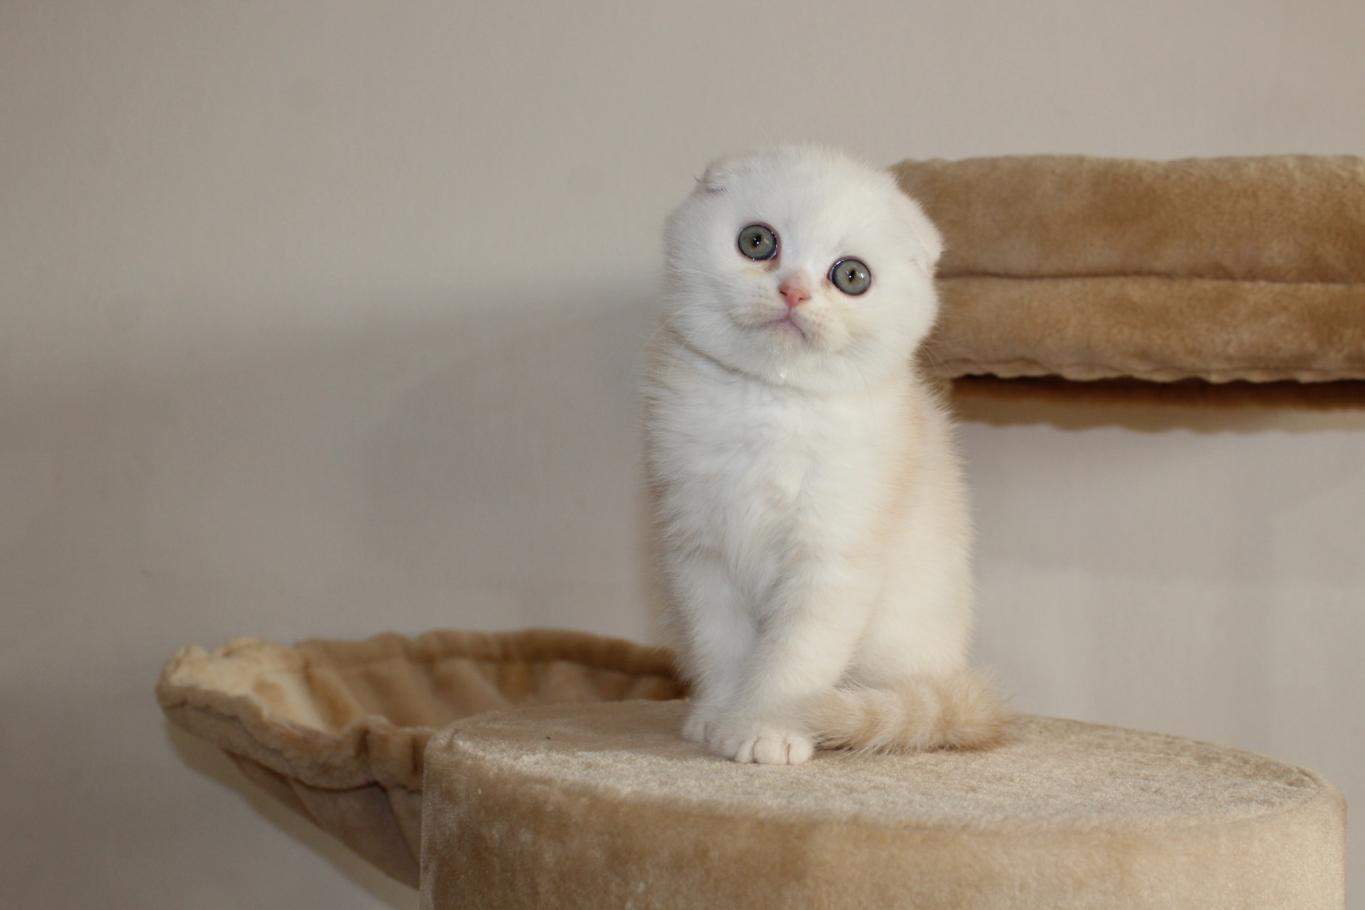 Cucciolo gattino scottish fold british.